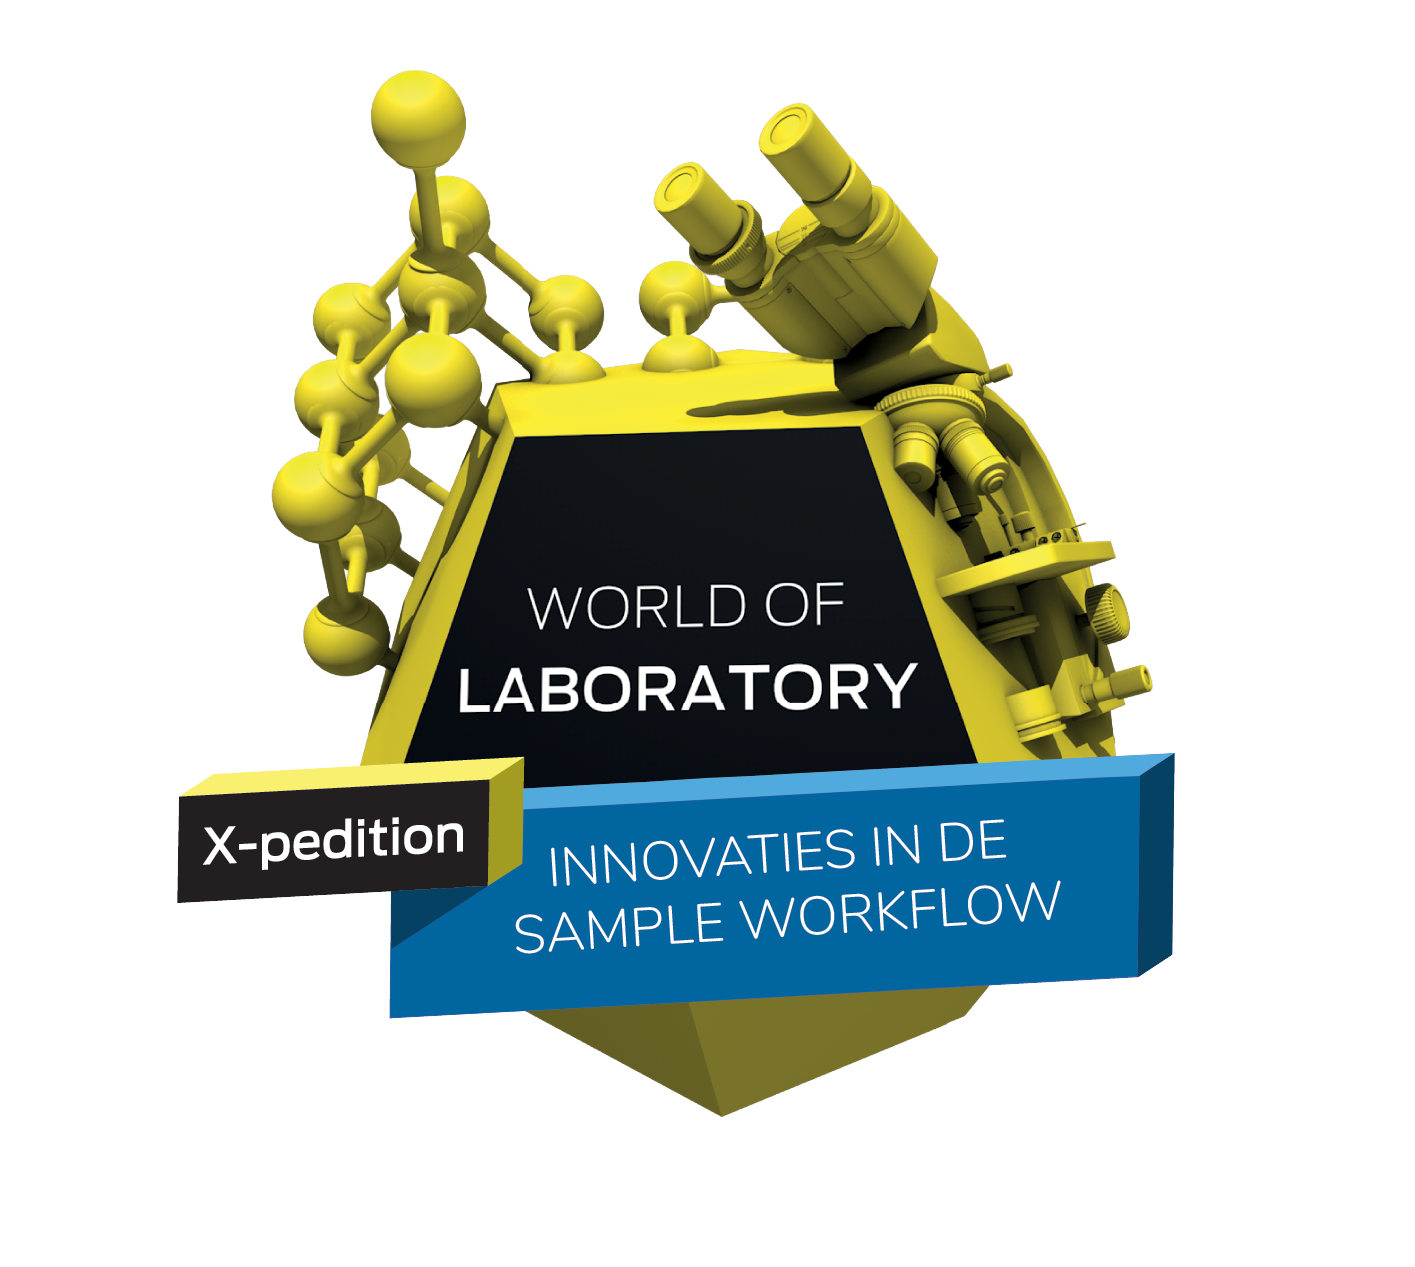 X-pedition innovaties in de sample workflow